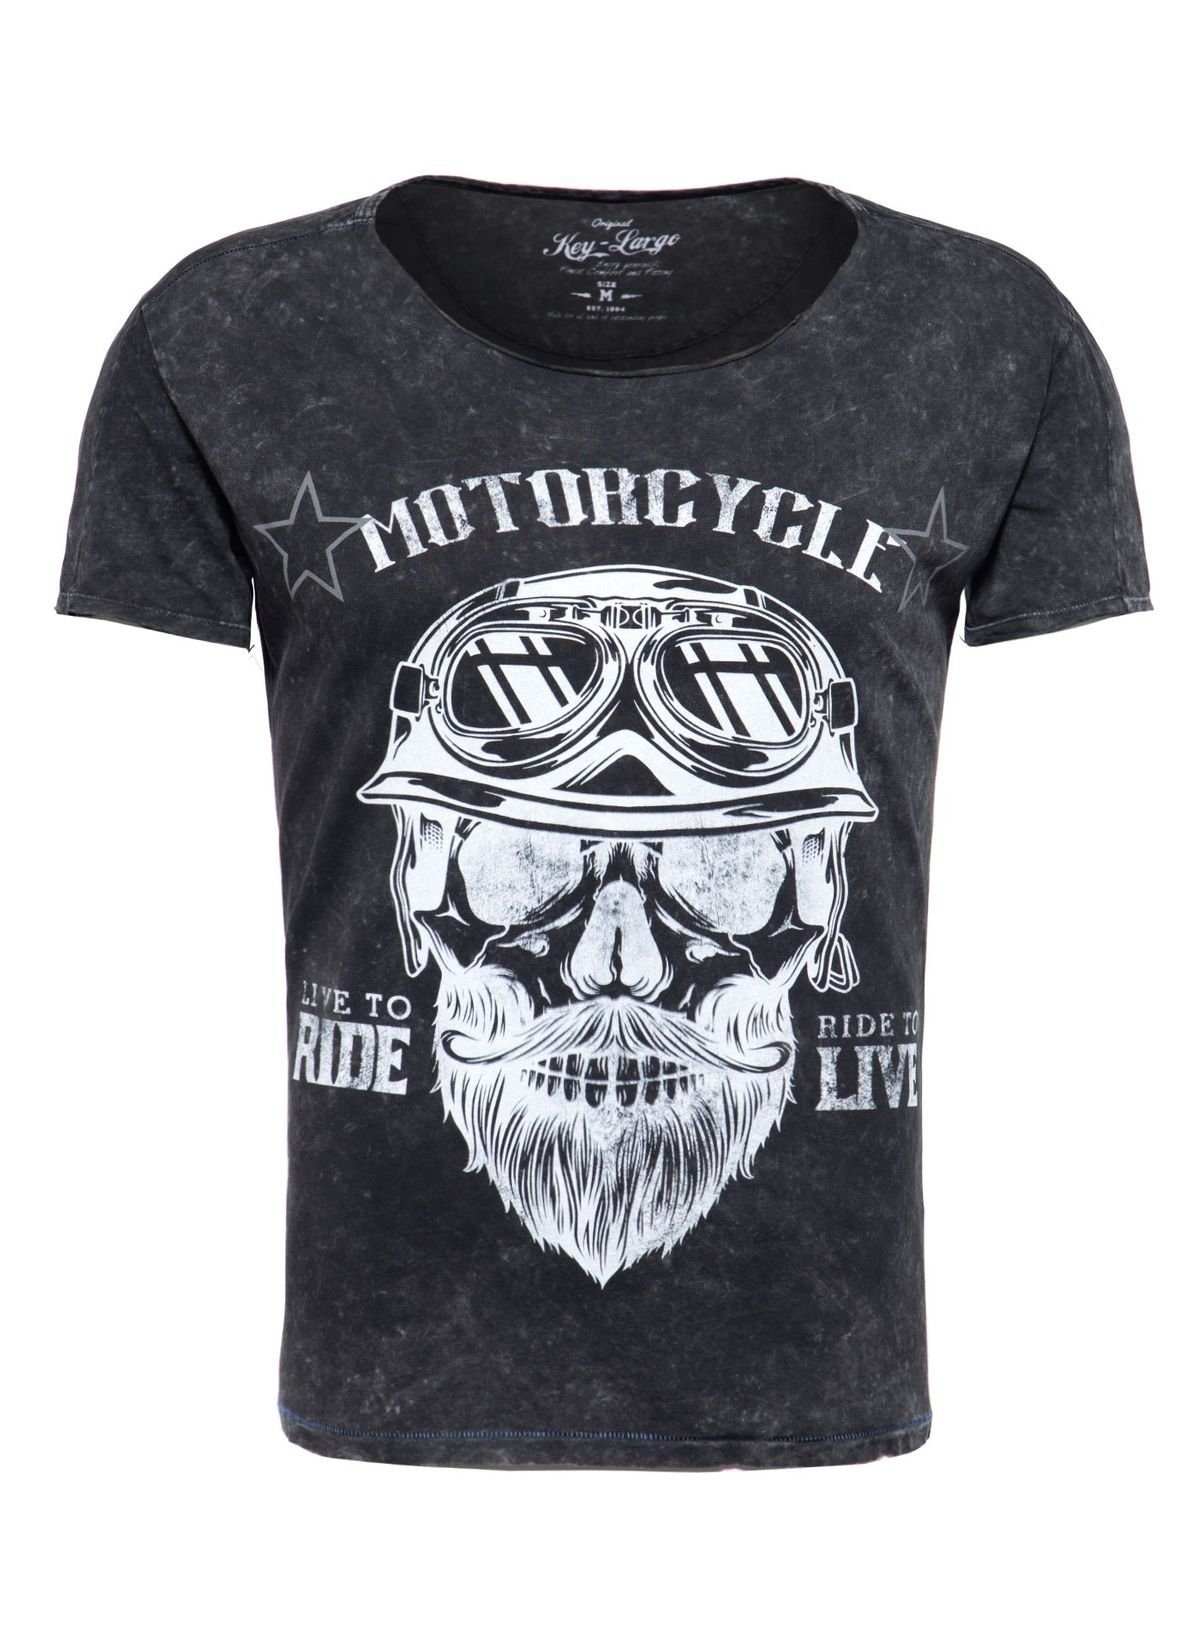 Key Largo T-Shirt für Herren Bearded Biker Skull Print Motiv vintage Look MT00203 Rundhalsauschnitt bedruckt kurzarm slim fit Schwarz